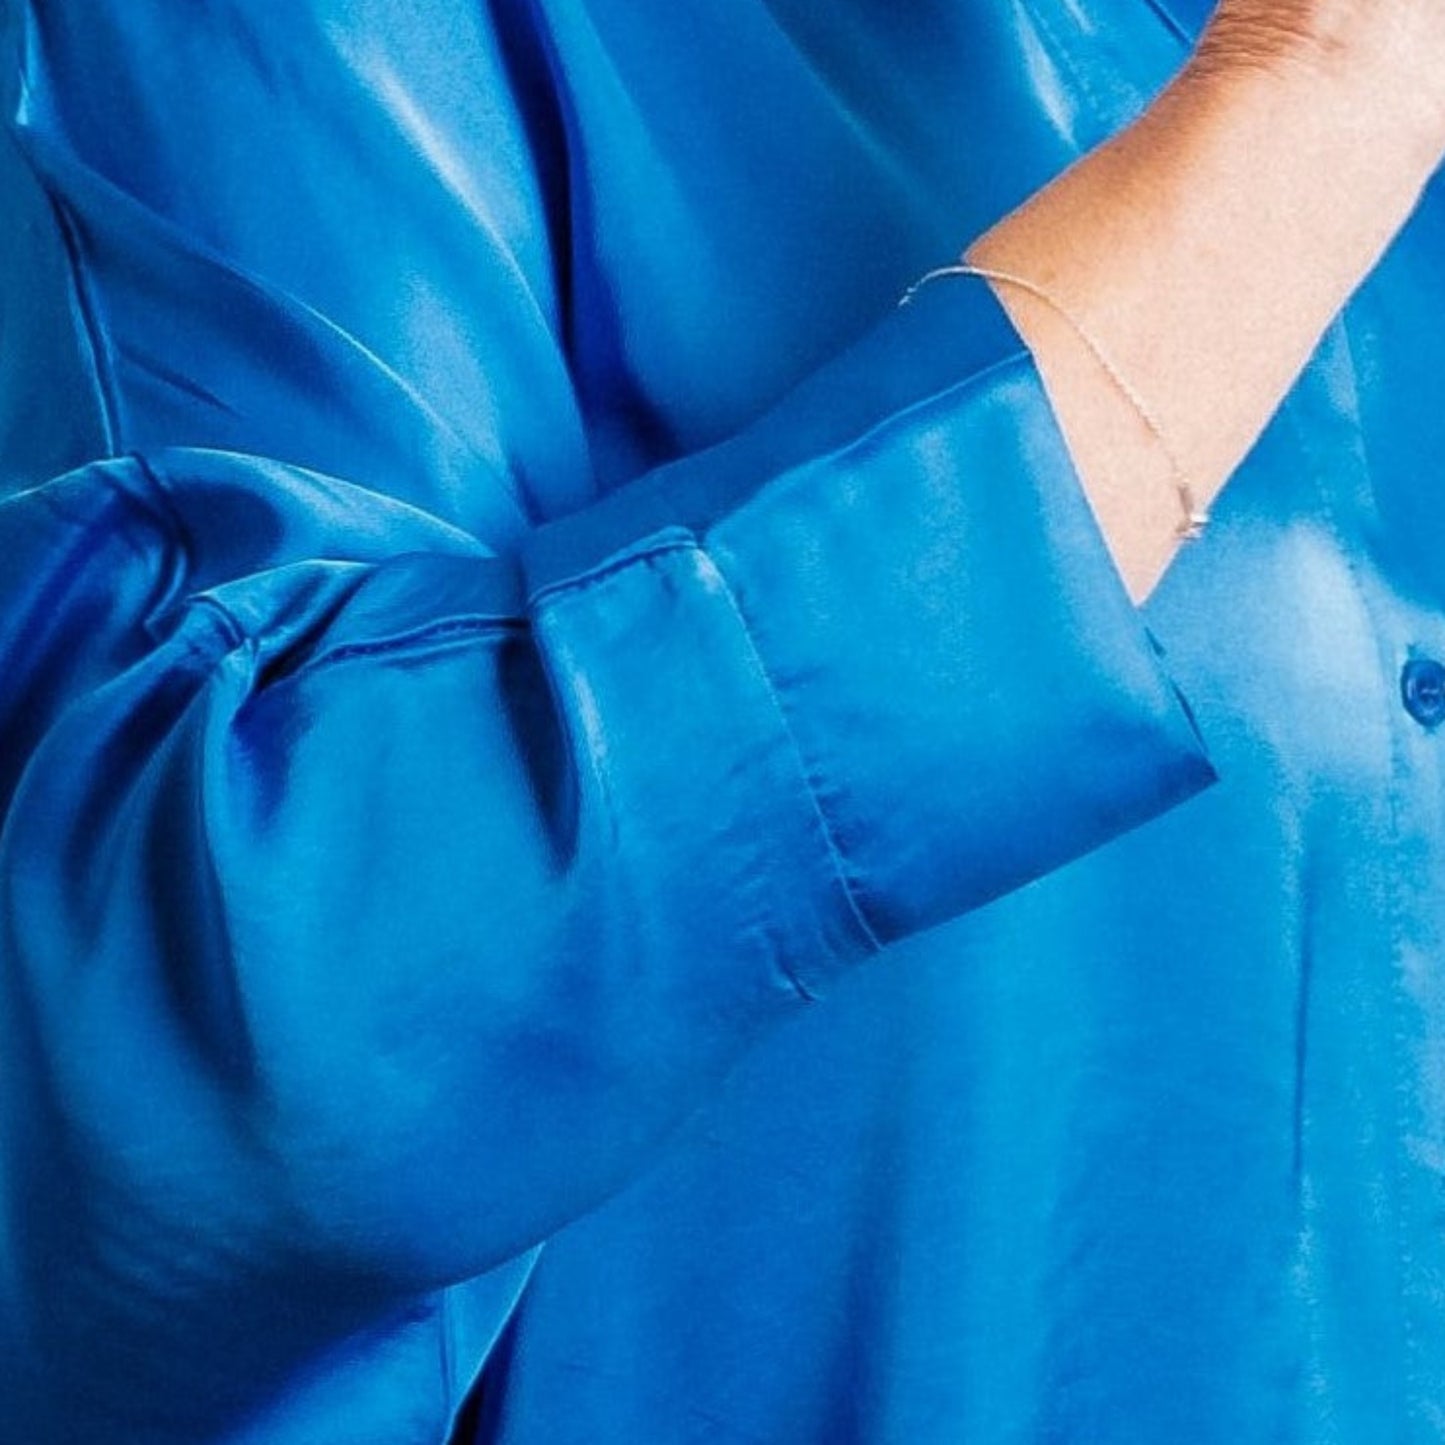 Cobalt Blue Silky Soft Oversize Trapeze Drape Shirt/Shirt Dress - Amilu